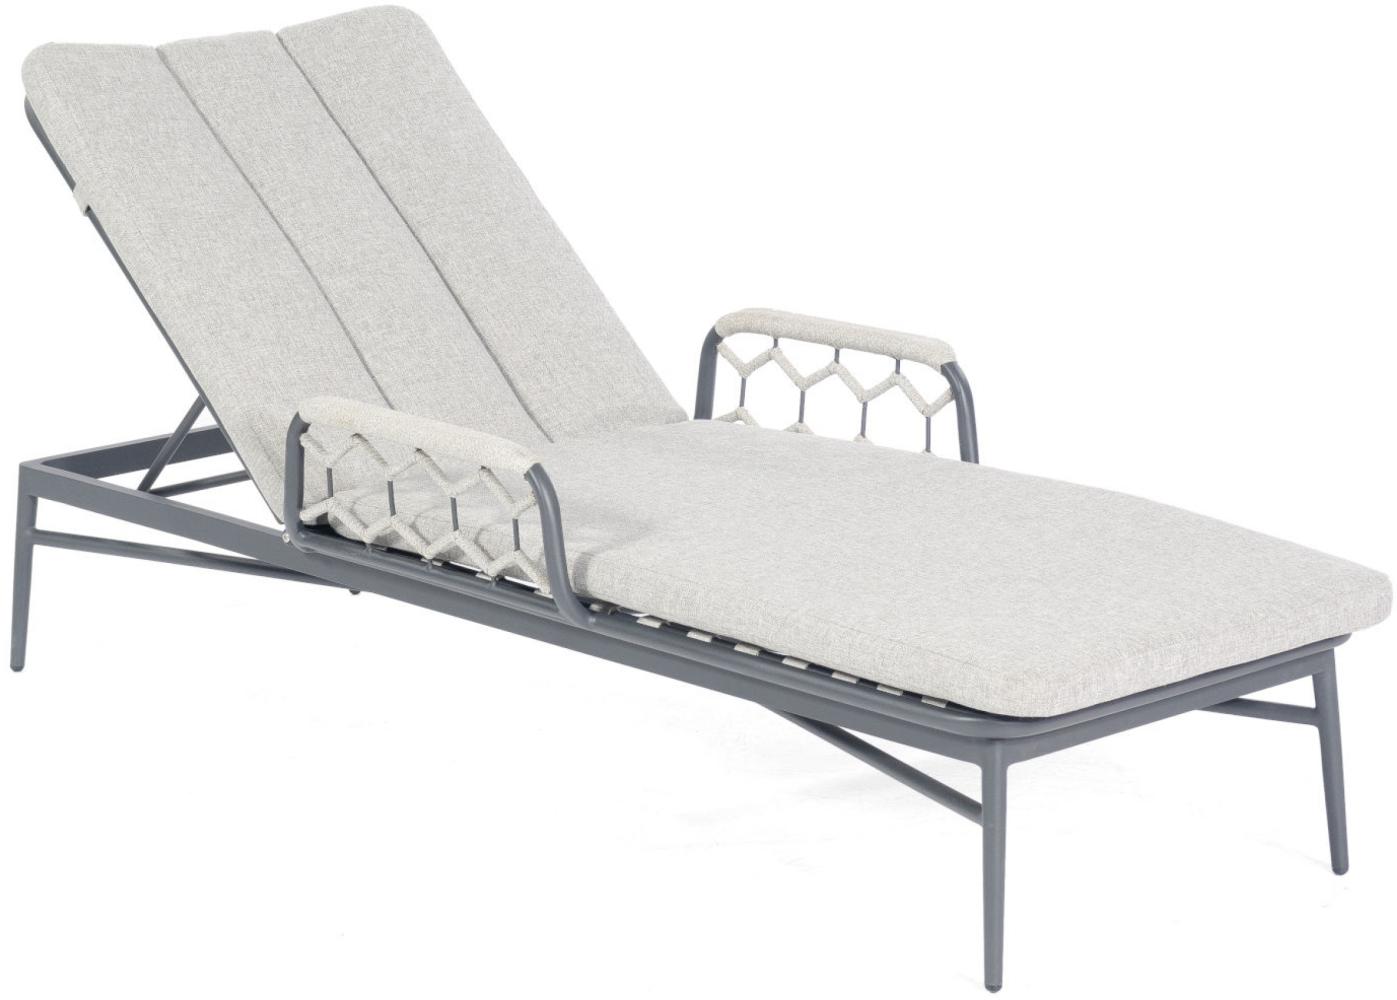 Sonnenpartner Lounge-Liege Yale Aluminium mit Polyrope silbergrau mit Auflage Relaxsessel Gartenlieg Bild 1